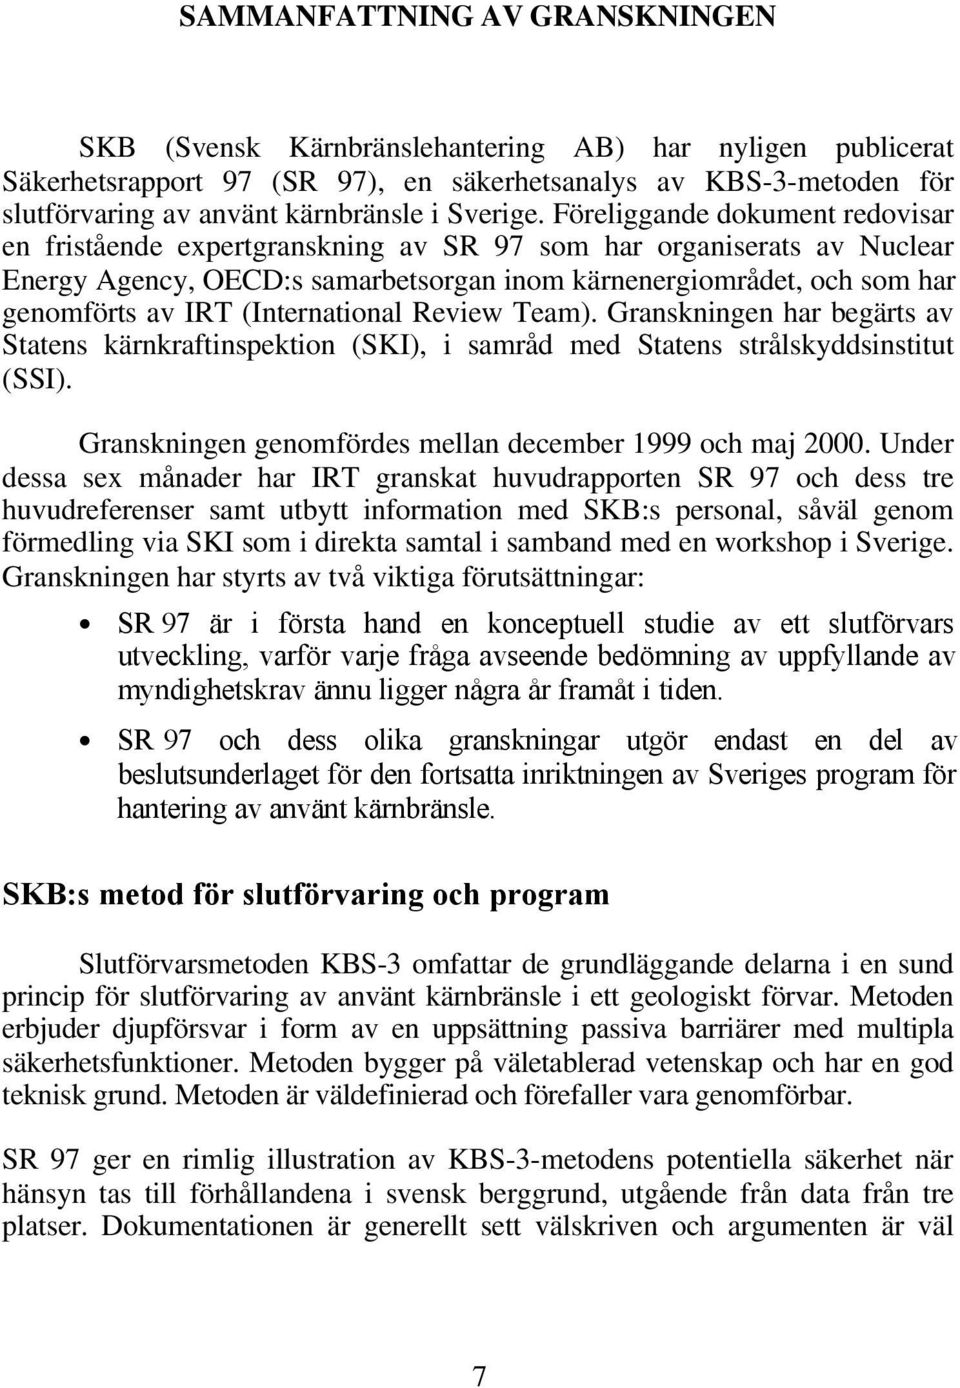 Föreliggande dokument redovisar en fristående expertgranskning av SR 97 som har organiserats av Nuclear Energy Agency, OECD:s samarbetsorgan inom kärnenergiområdet, och som har genomförts av IRT